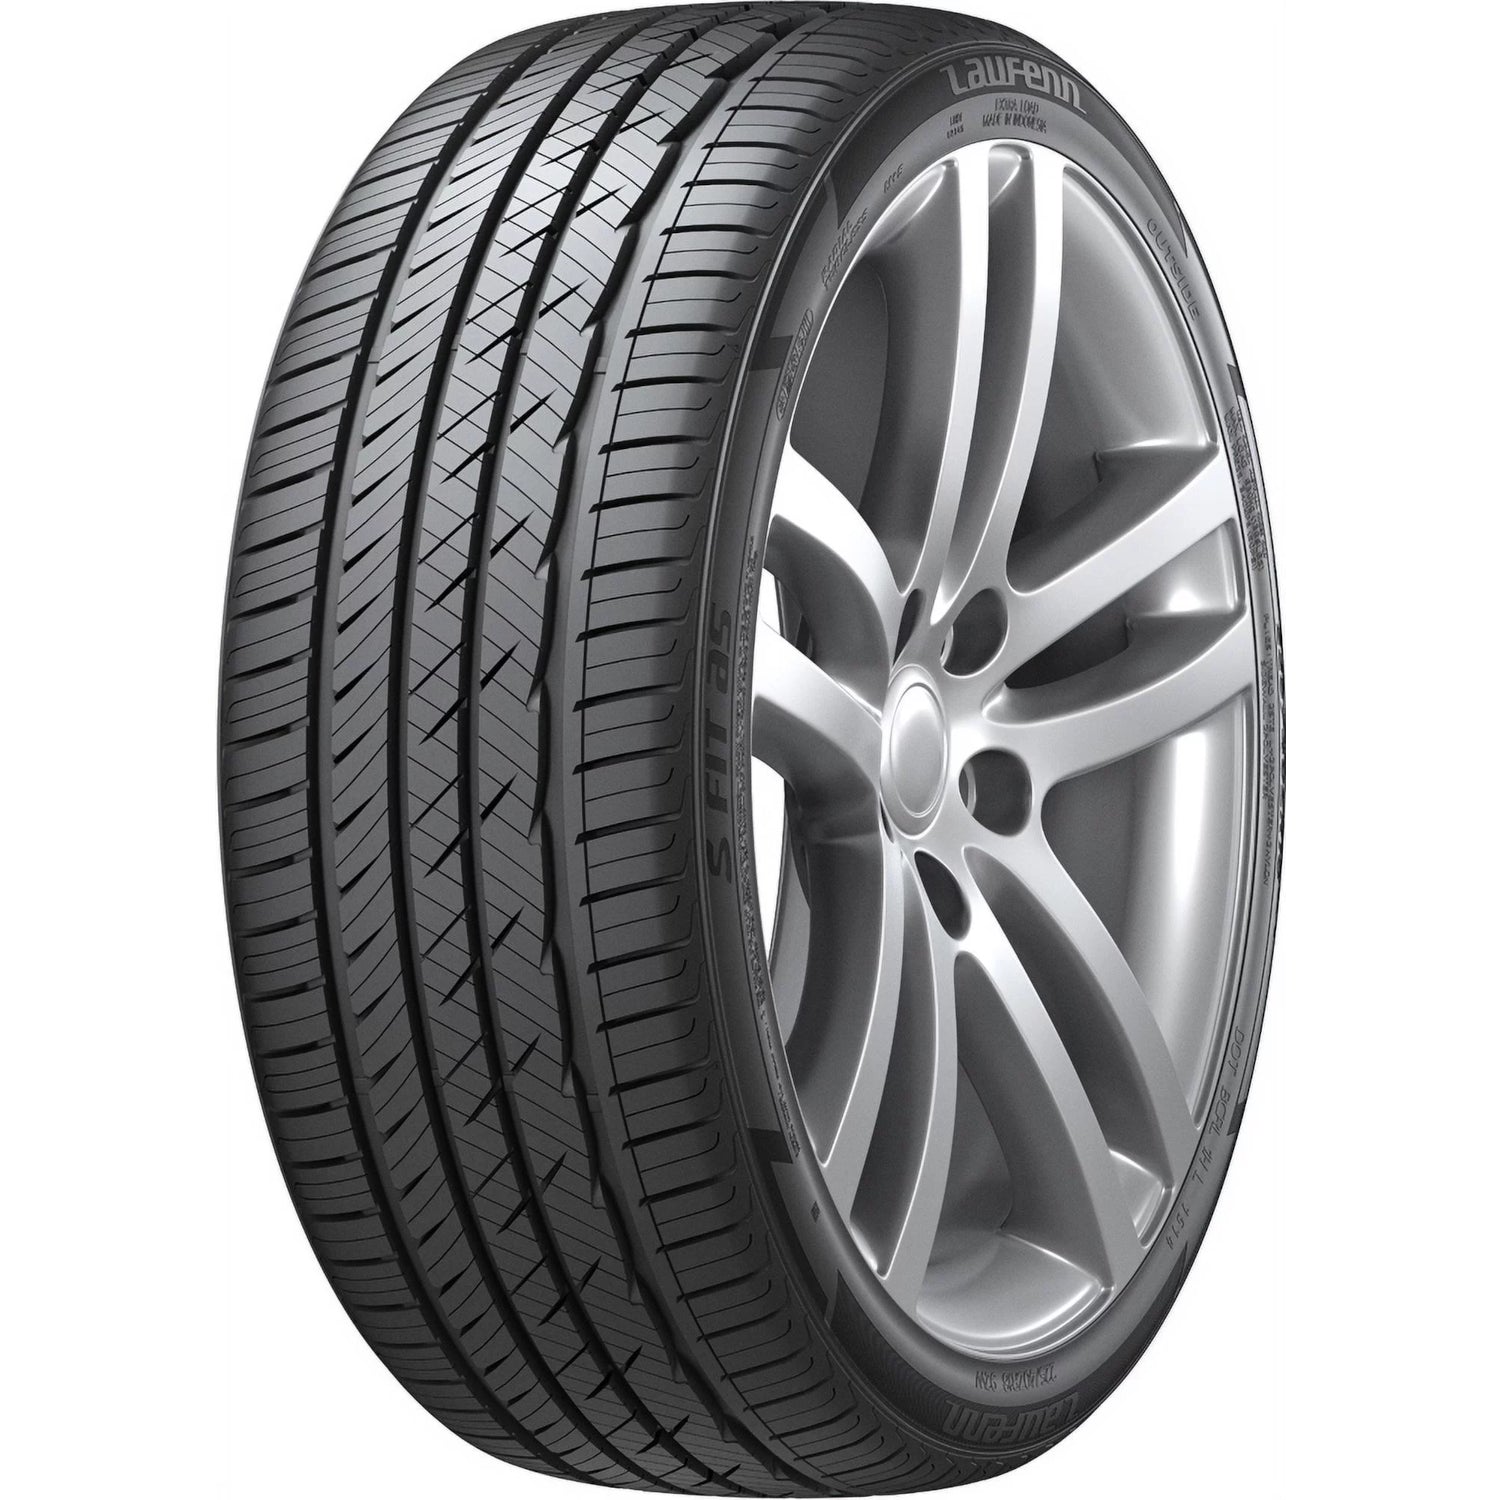 LAUFENN S FIT AS 235/50ZR17 (26.3X9.3R 17) Tires